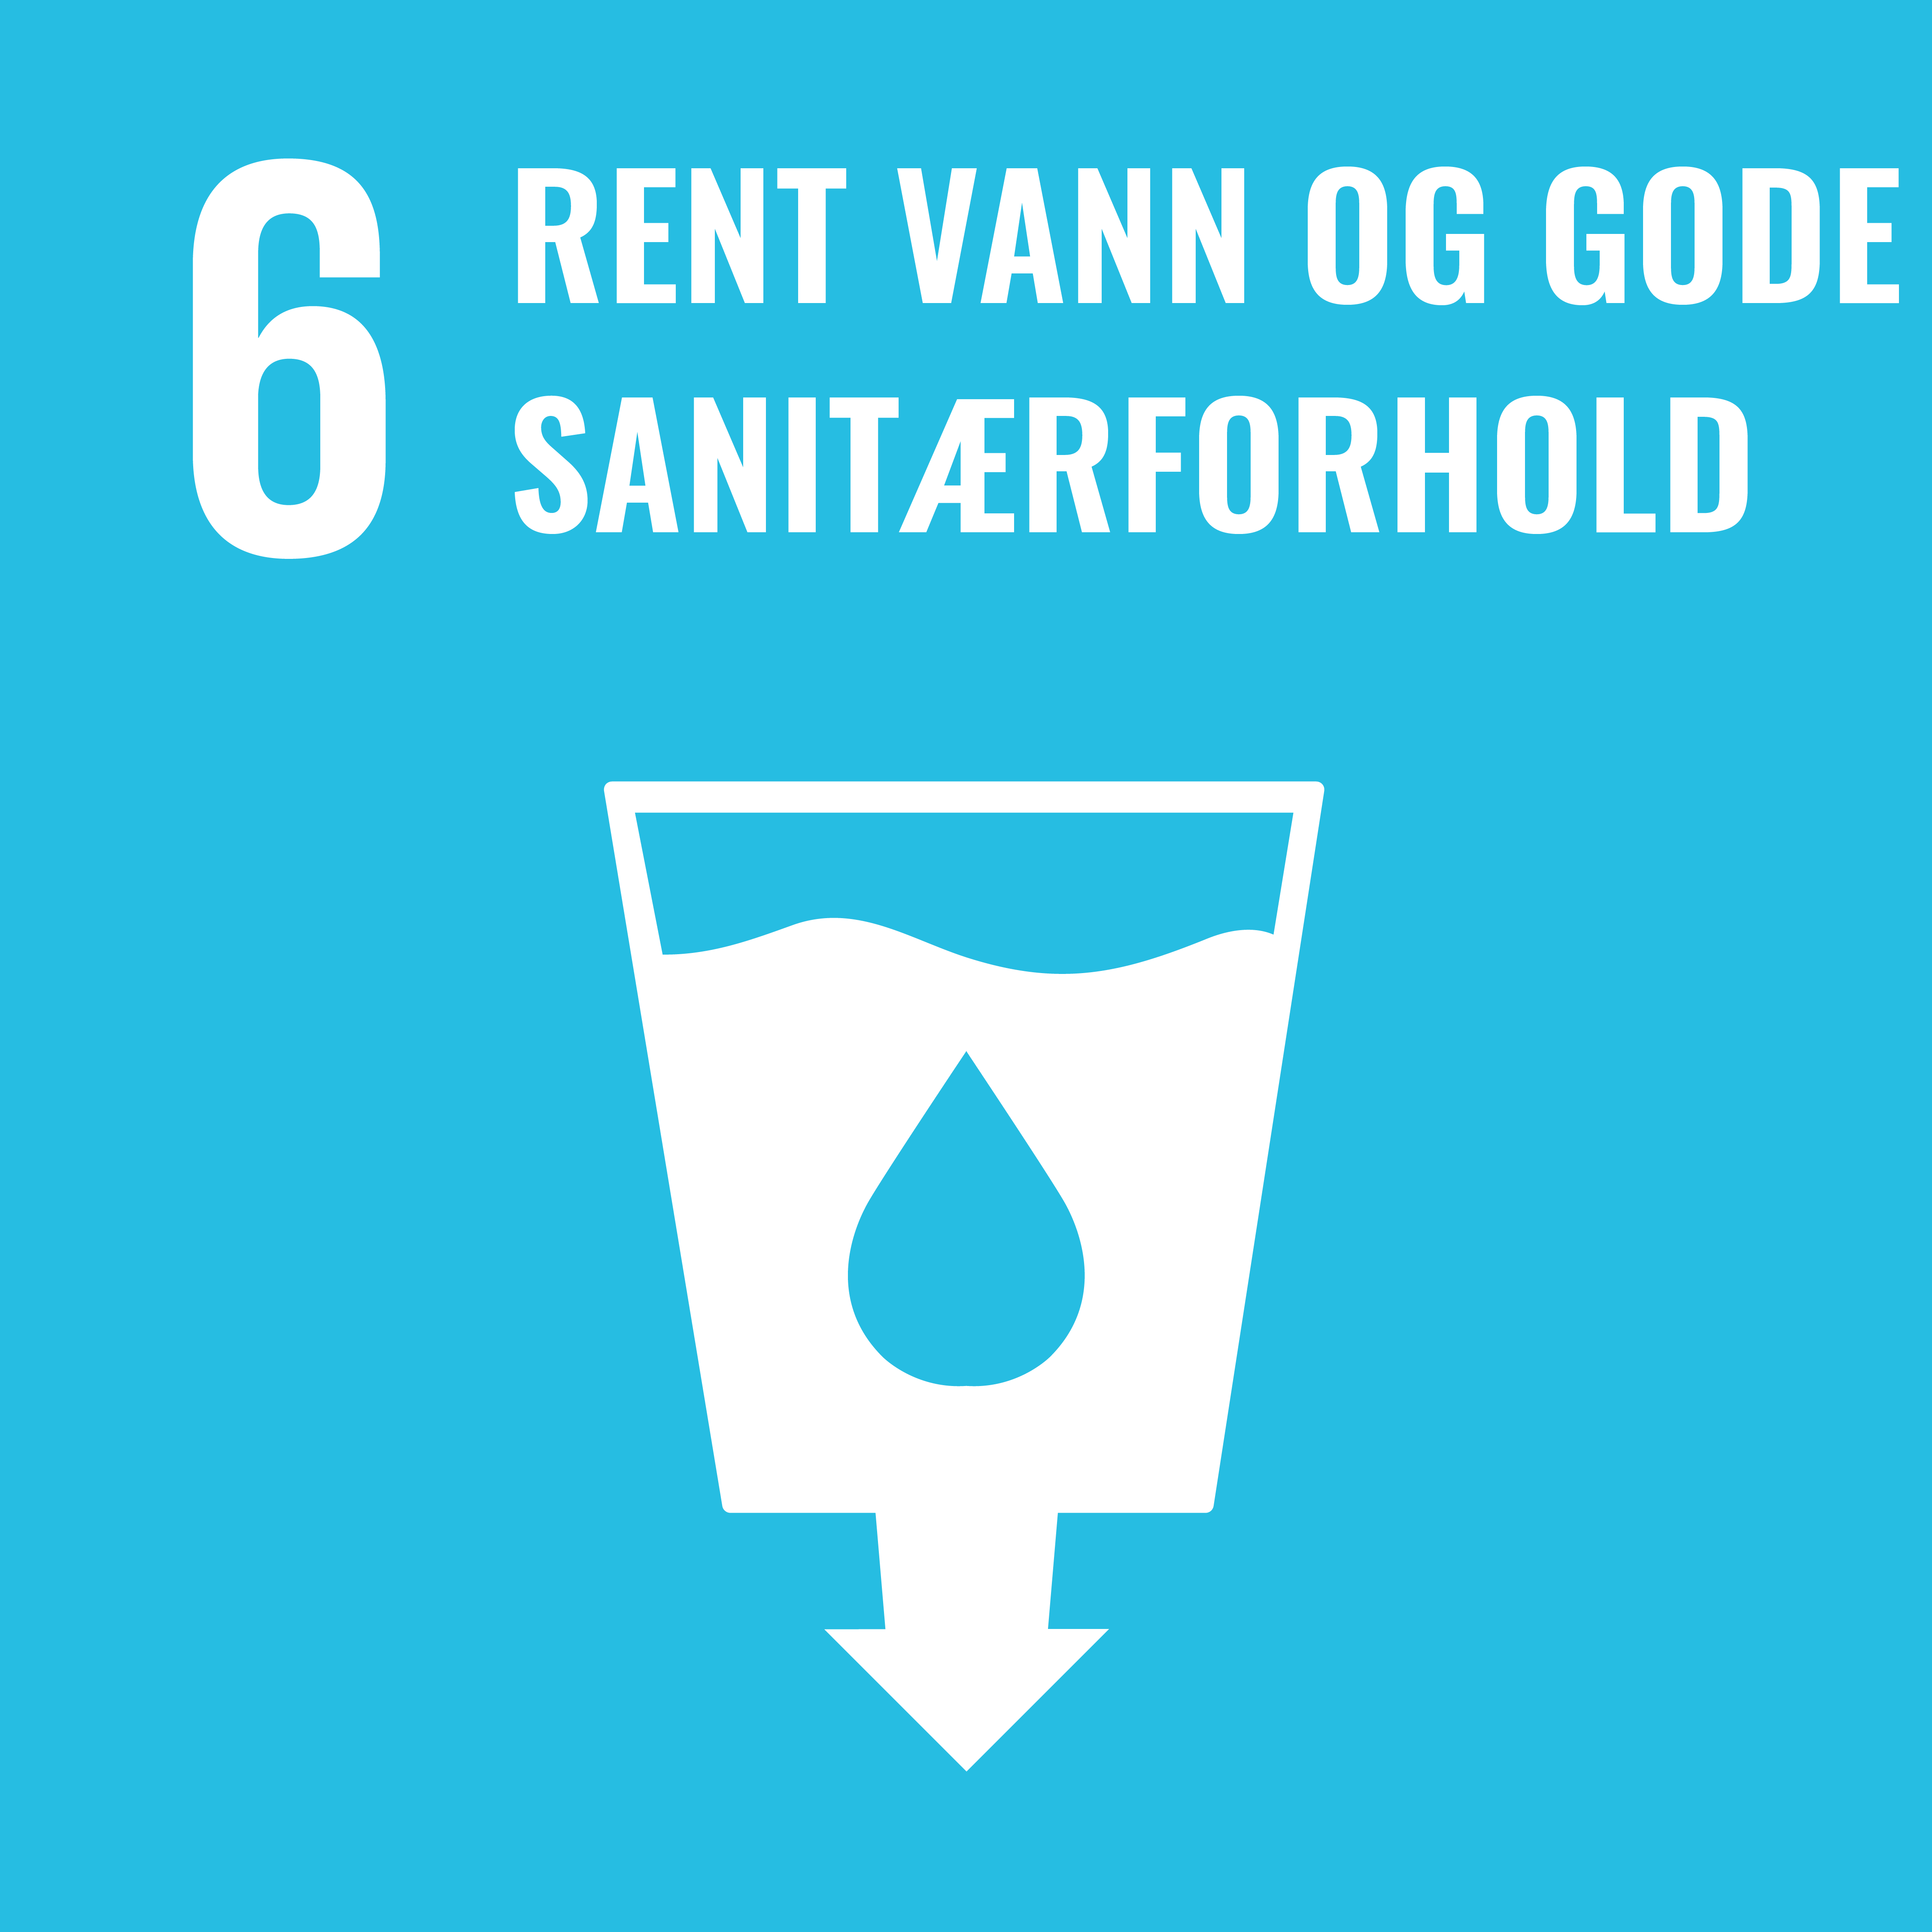 FNs bærekraftmål nummer 6 Rent vann og gode sanitærforhold. Lenke til bærekraftsmål 6.